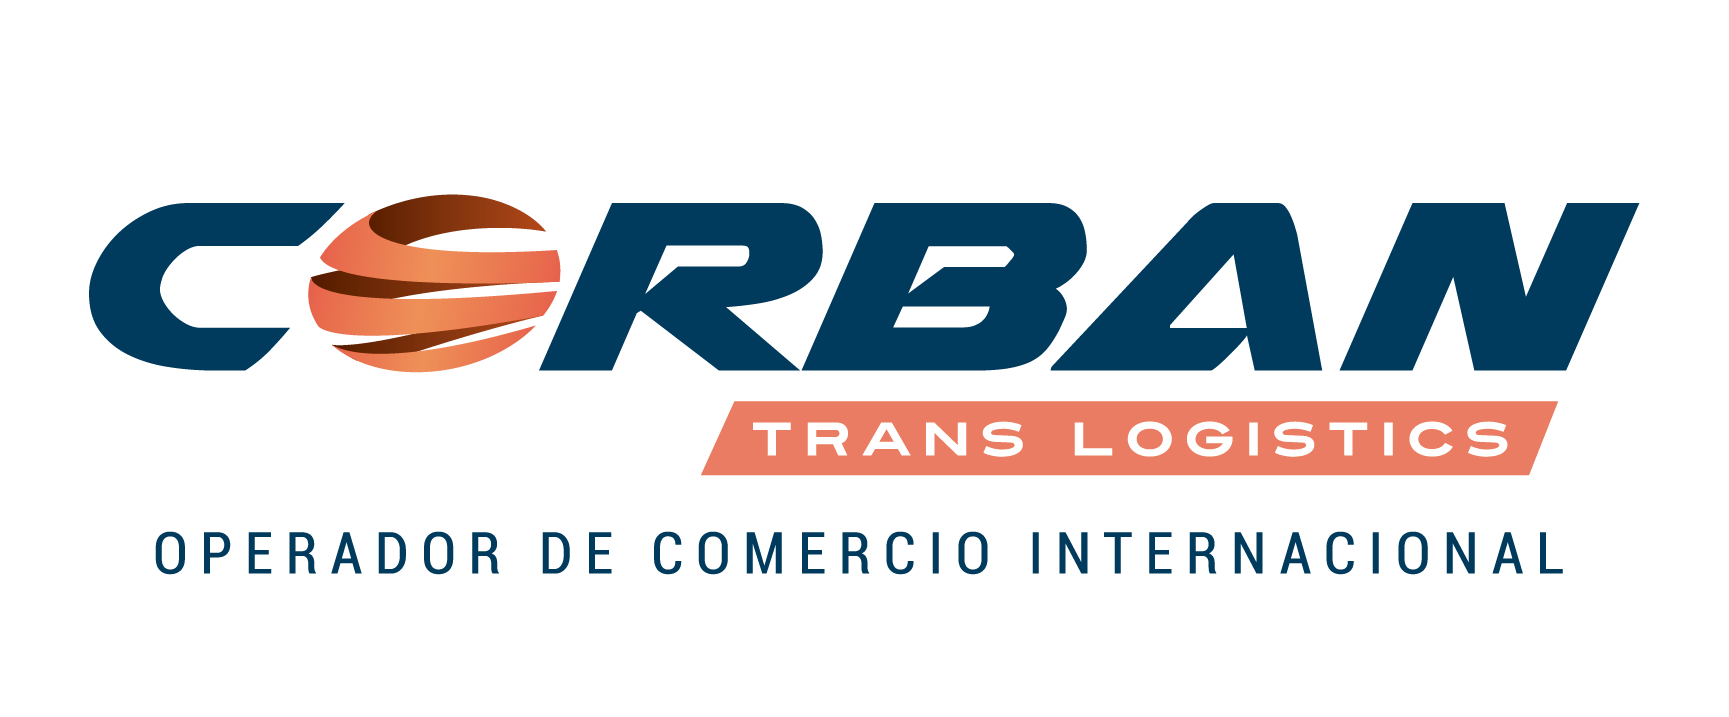 Corban Logo - Corban Trans | Logistica